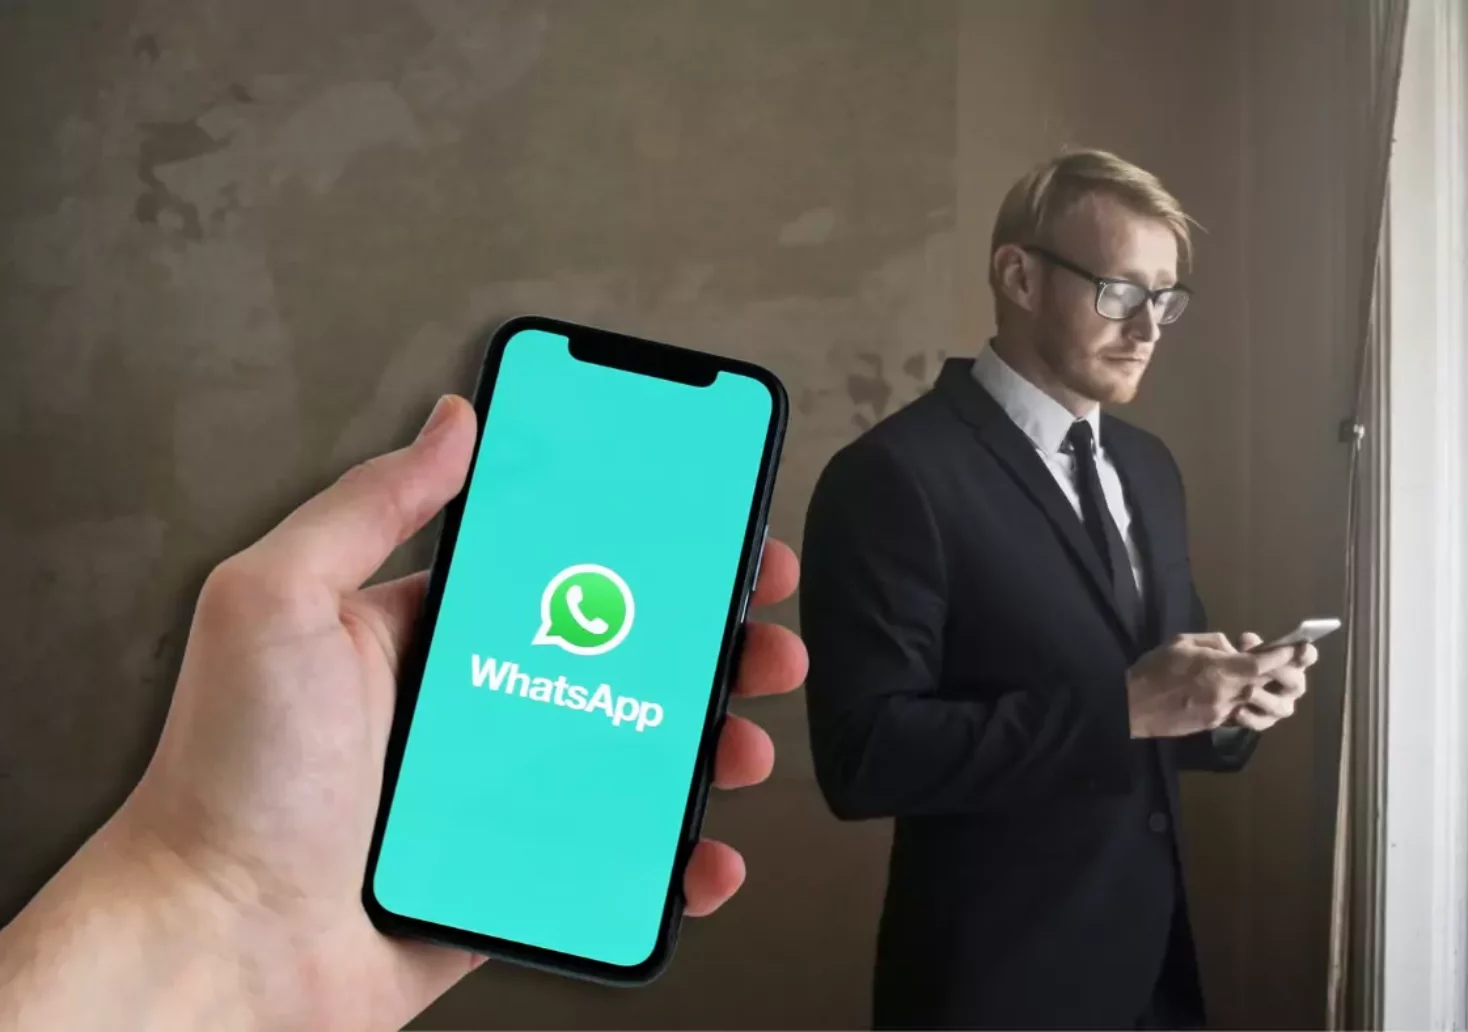 Montage auf 5min.at zeigt einen Mann mit Telefon. Im Vordergrund ist eine Hand mit Handy, wo die App WhatsApp ersichtlich ist.